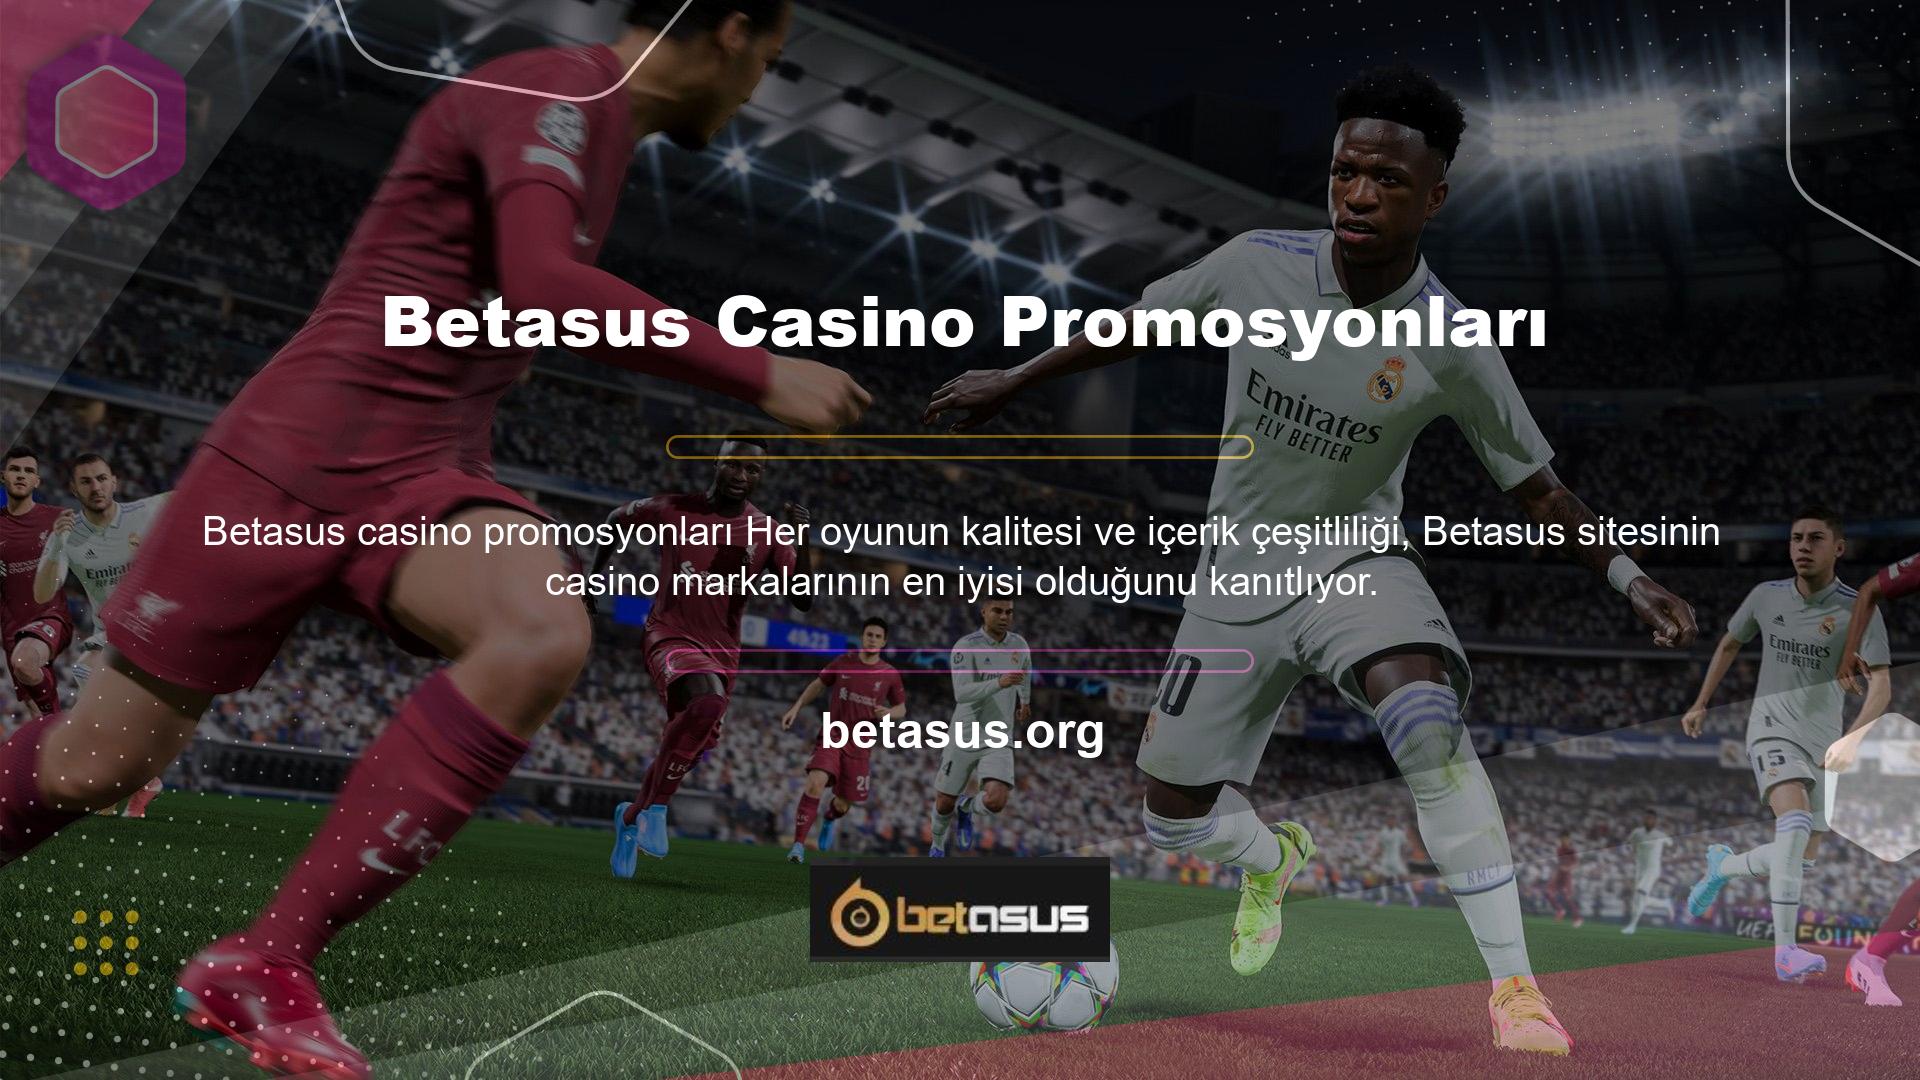 Bu inancı promosyonlarla desteklemek için Betasus, slot kategorilerinin çoğu için promosyonlar da sunmaktadır